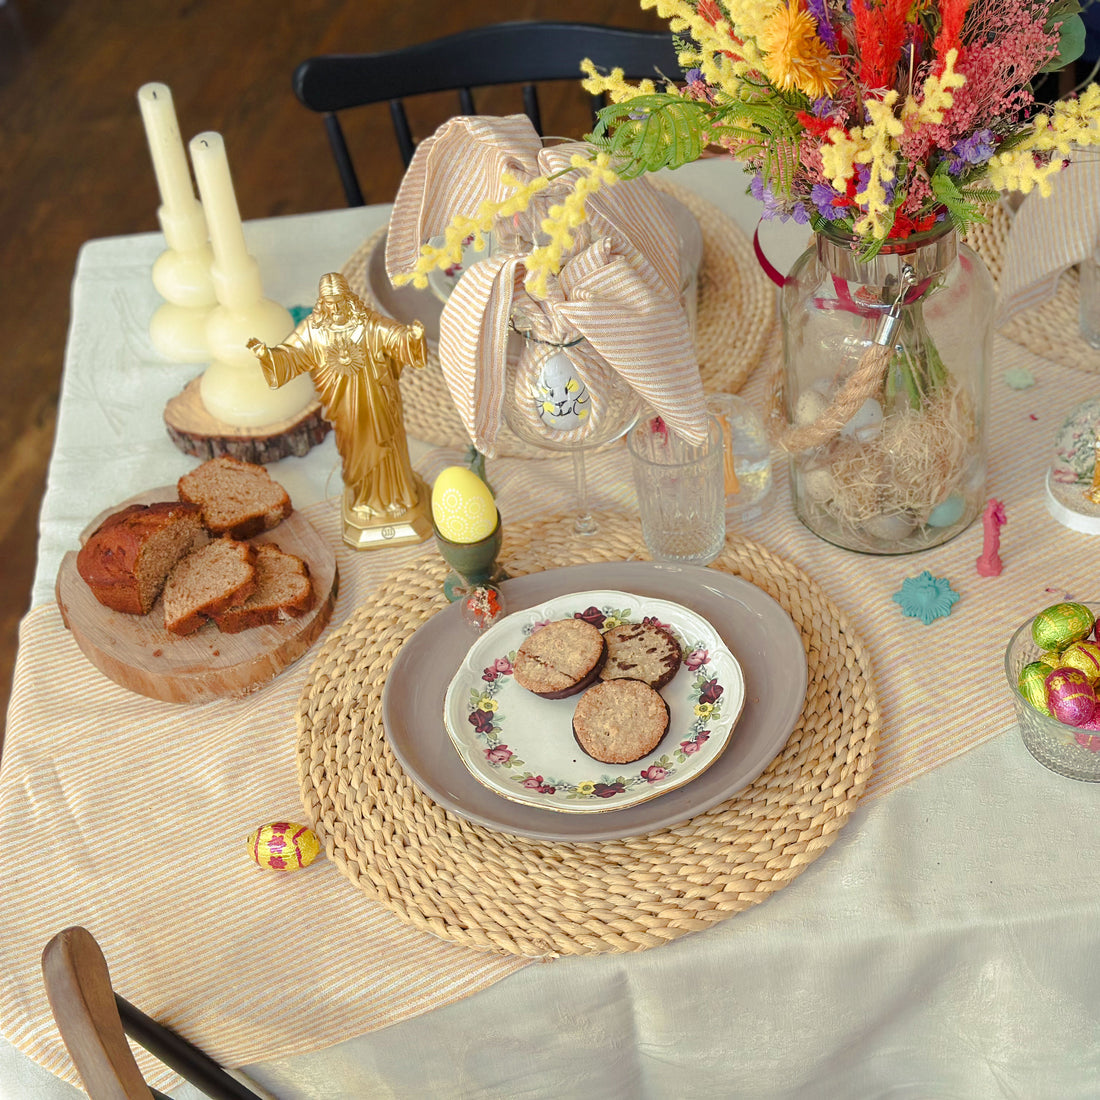 Réaliser une belle table de Pâques avec J'ai vu la Vierge